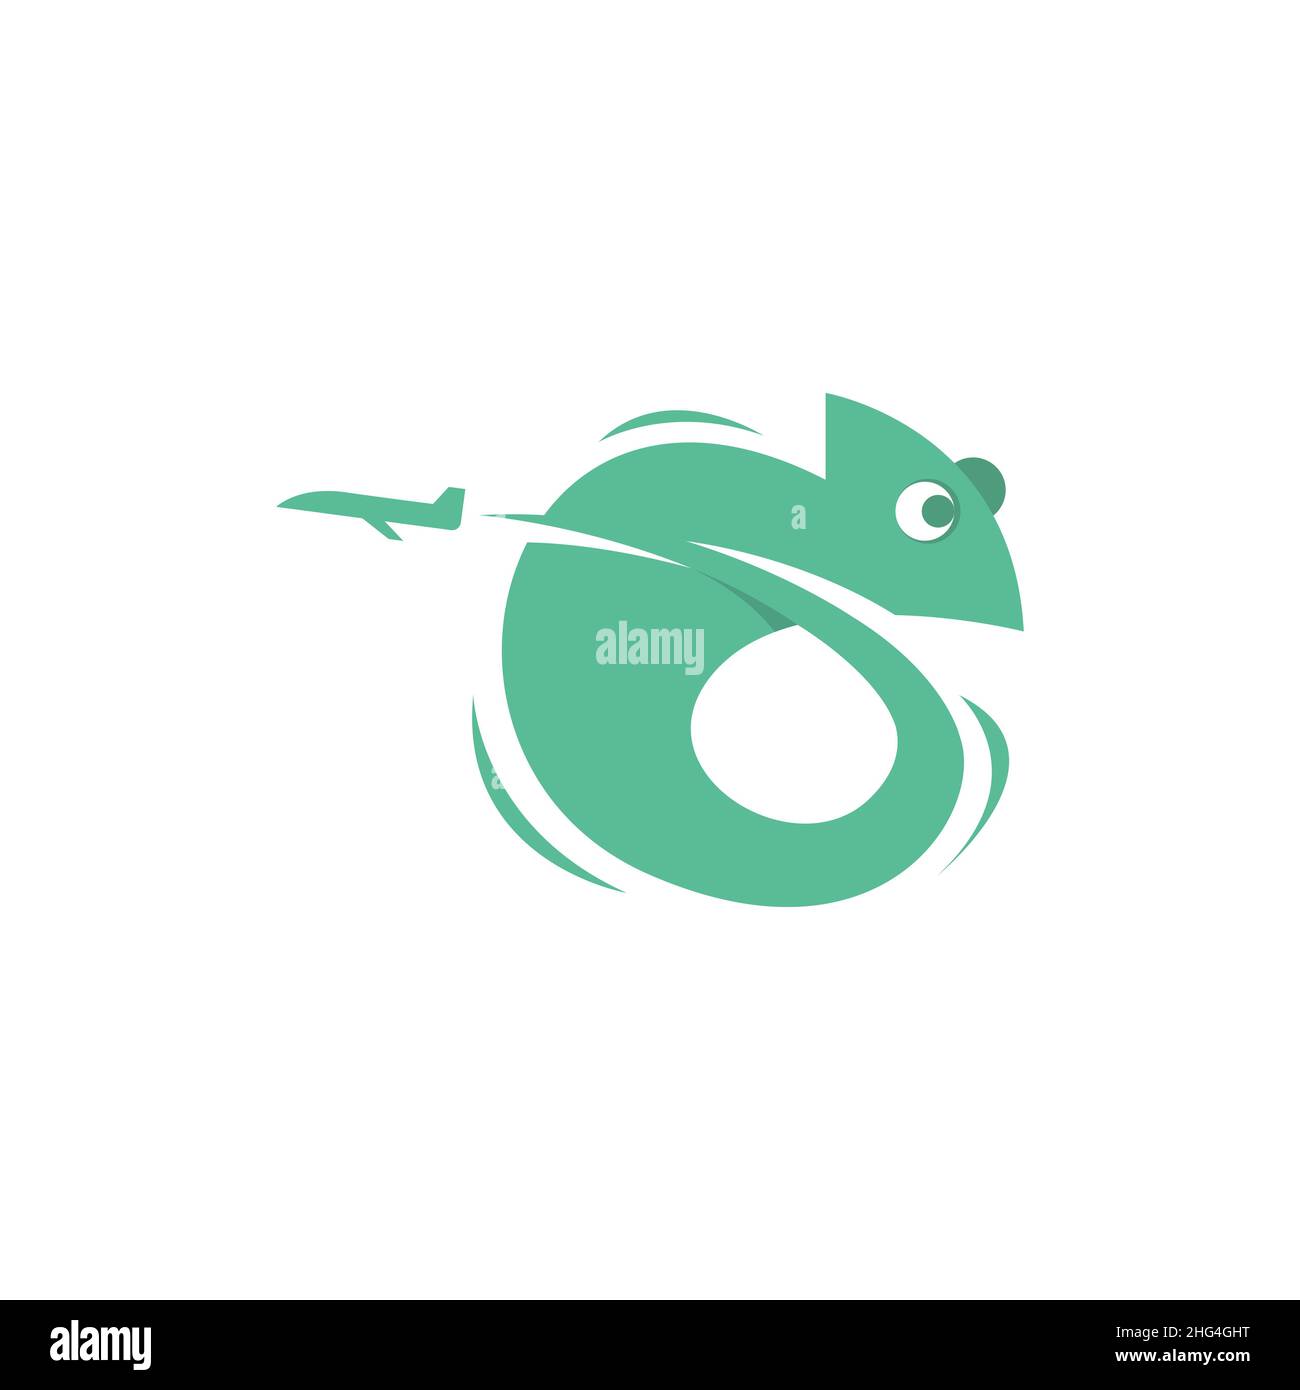 Chameleon travel agency logo Stock Vector